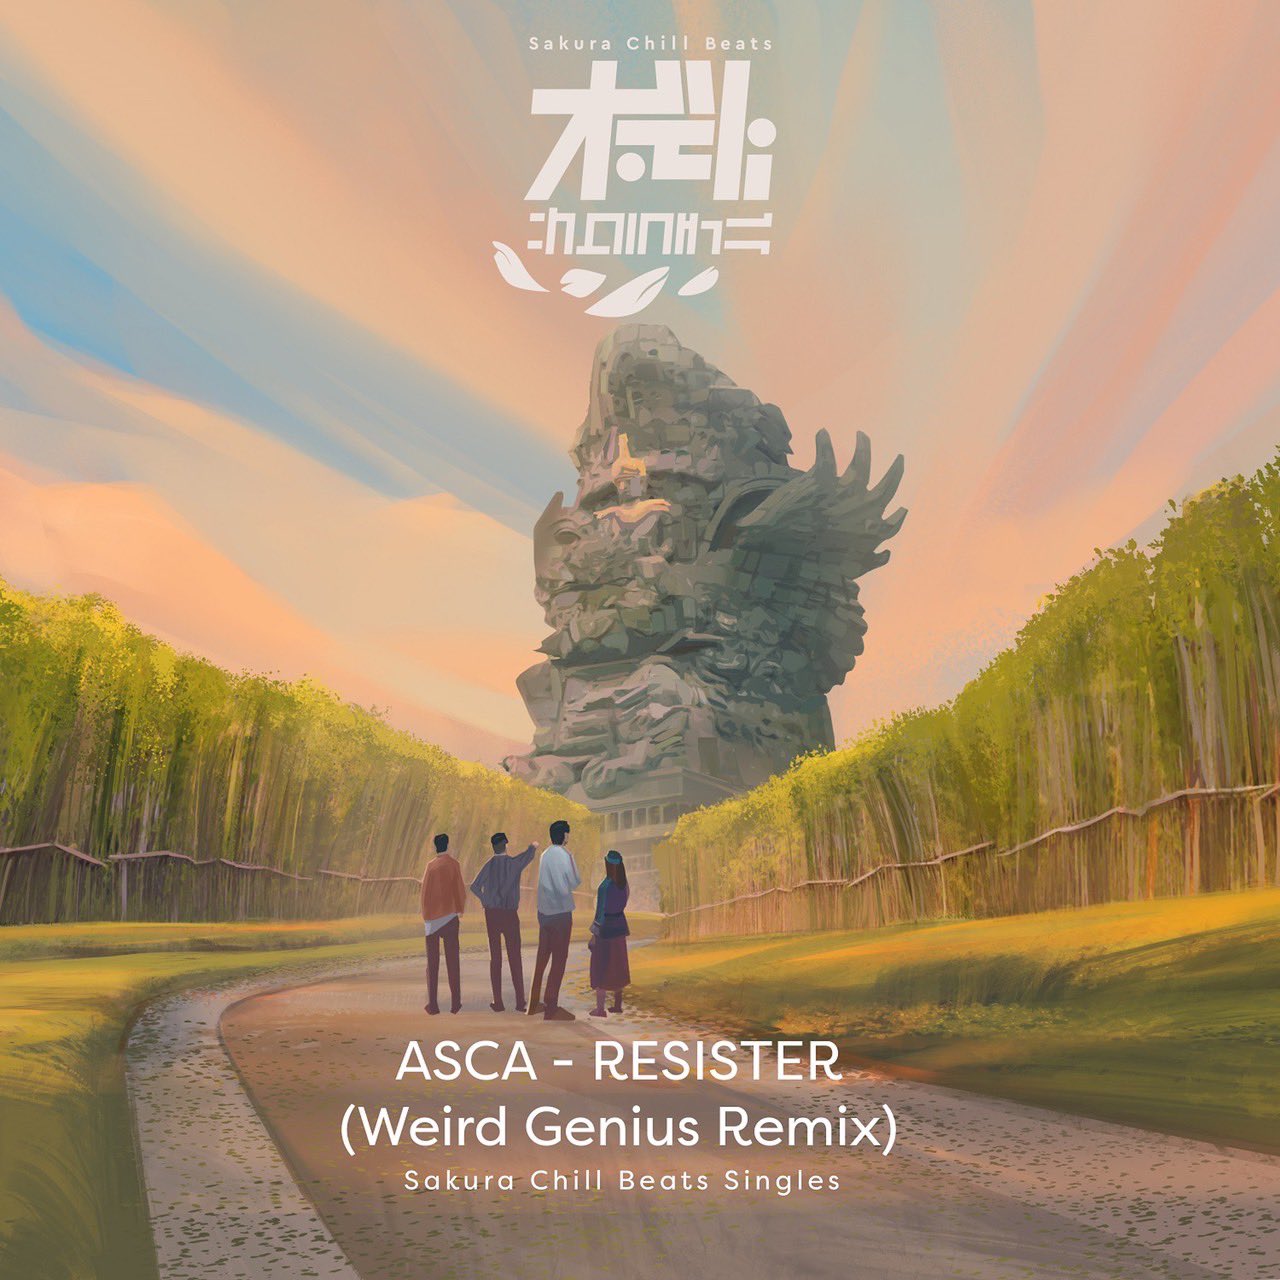 ASCA - RESISTER (Weird Genius Remix)